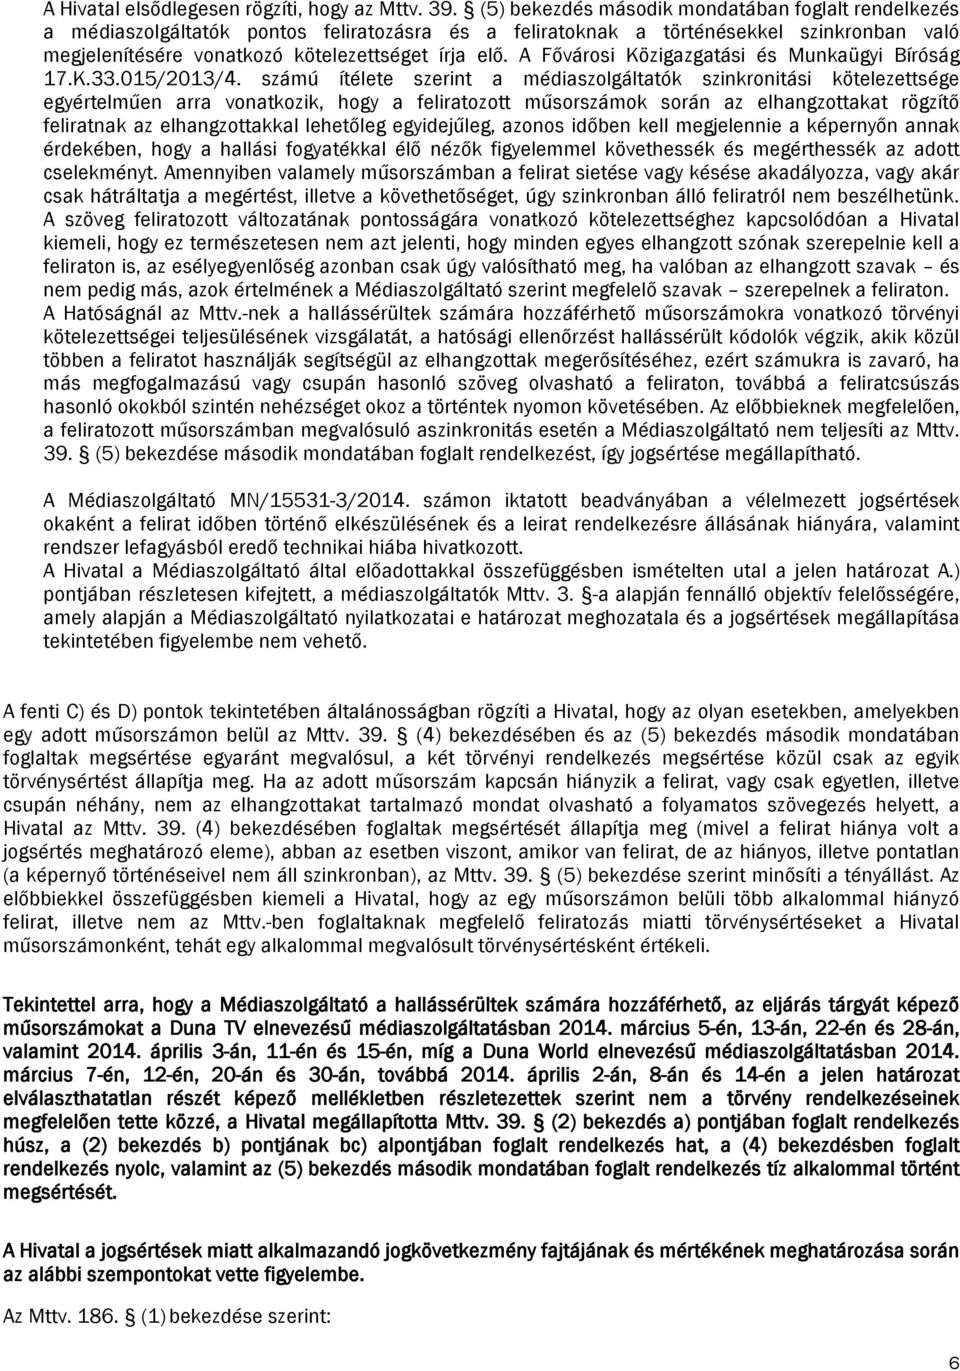 A Fővárosi Közigazgatási és Munkaügyi Bíróság 17.K.33.015/2013/4.